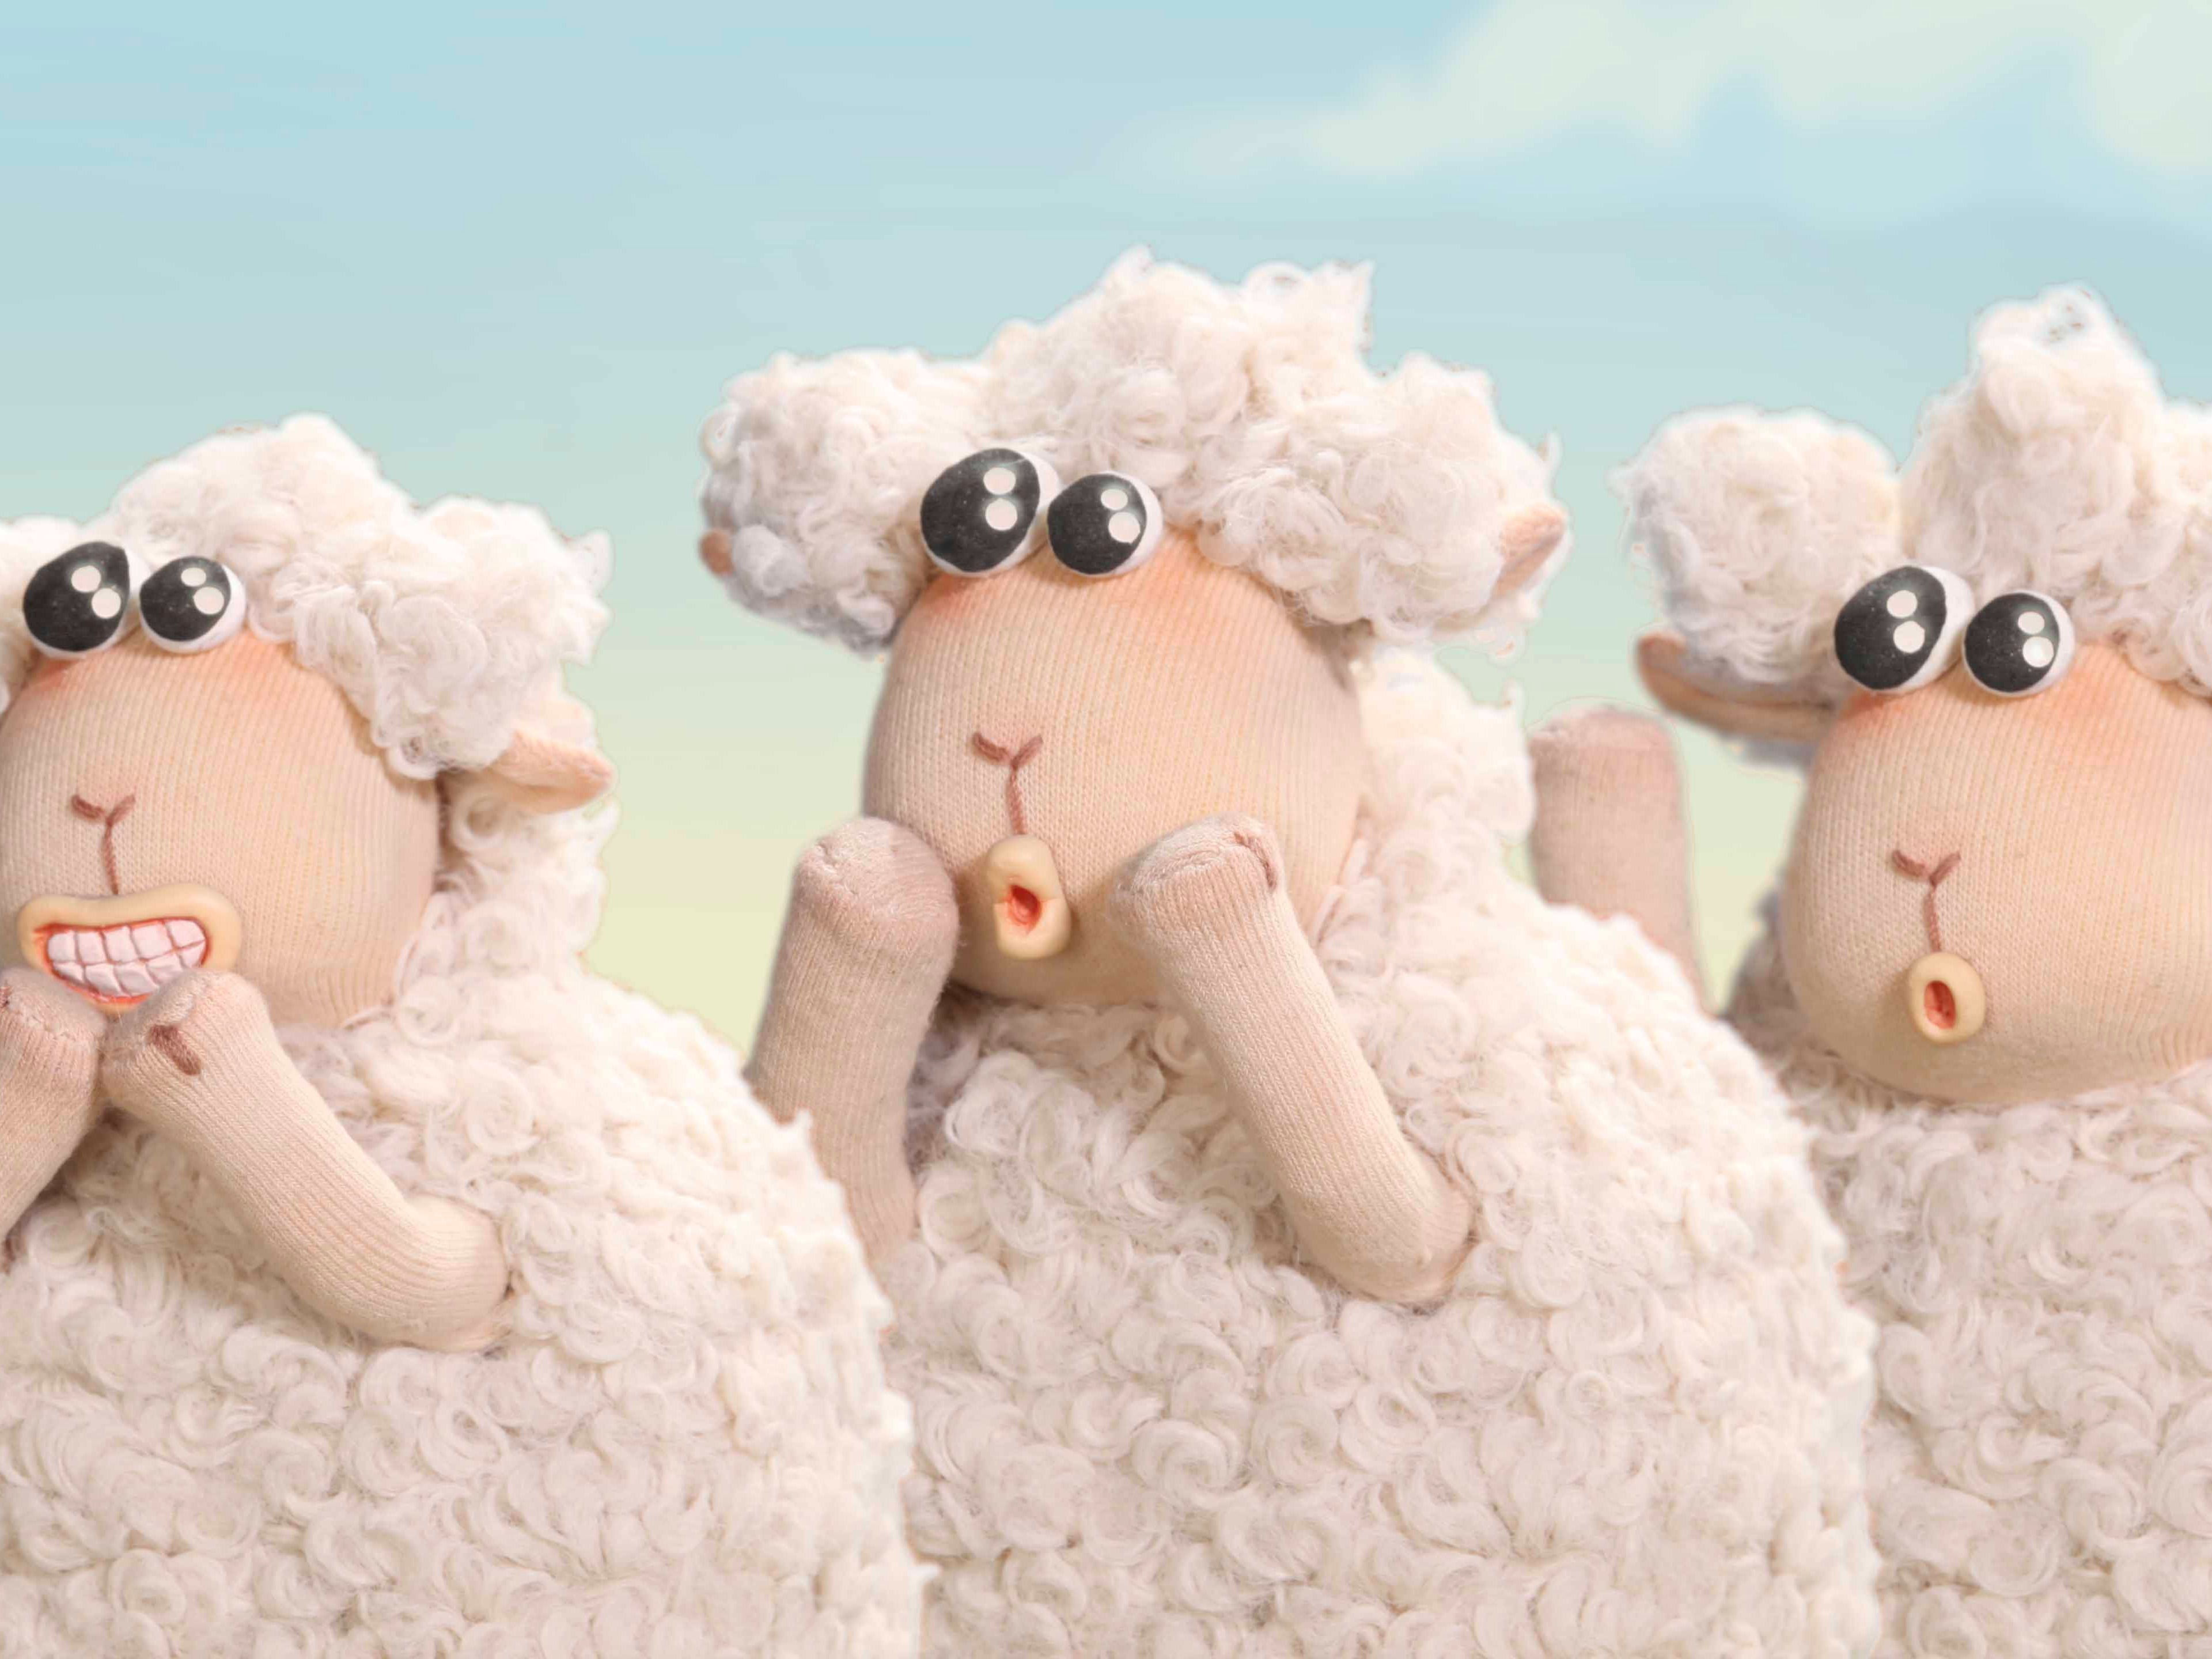 小天鹅品牌定格动画宣传片《羊羊超能“烘”趴馆》